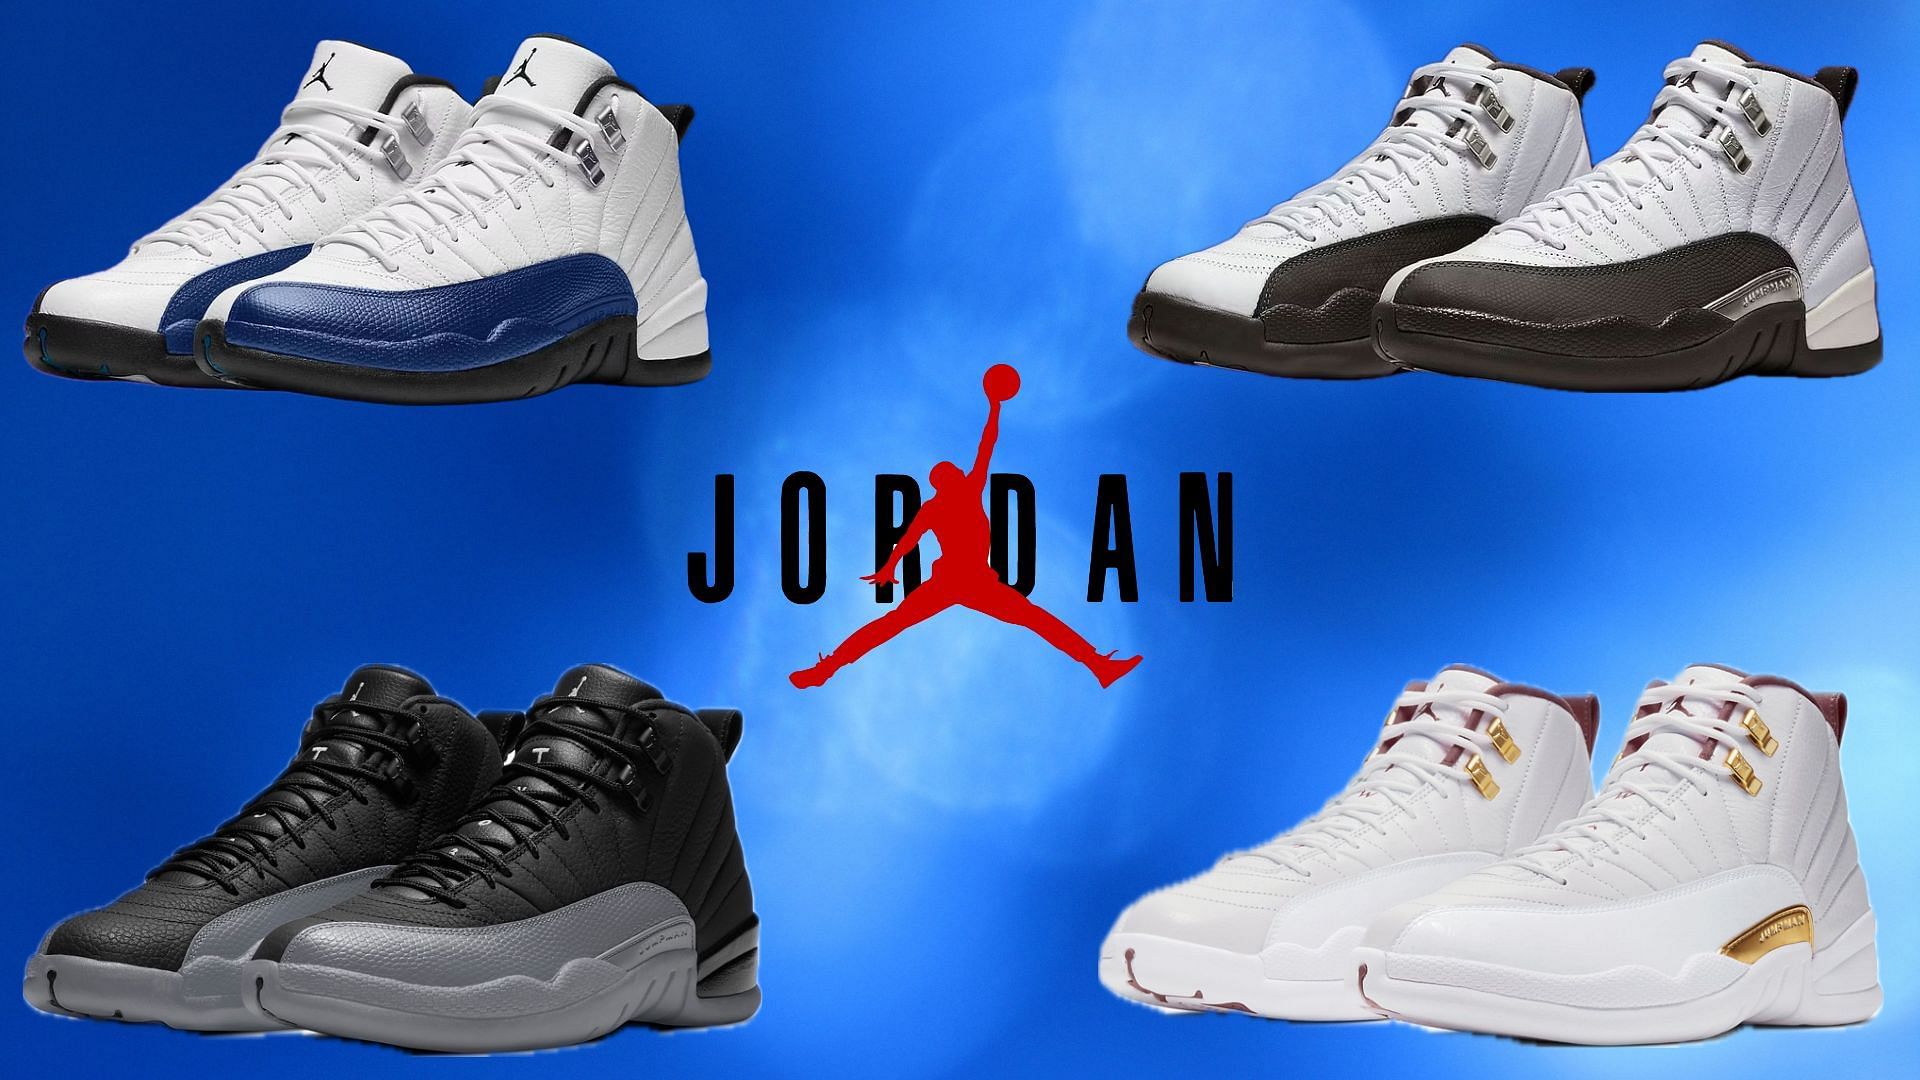 Air Jordan 12 sneaker colorways planned for 2024 (Image via Sportskeeda)